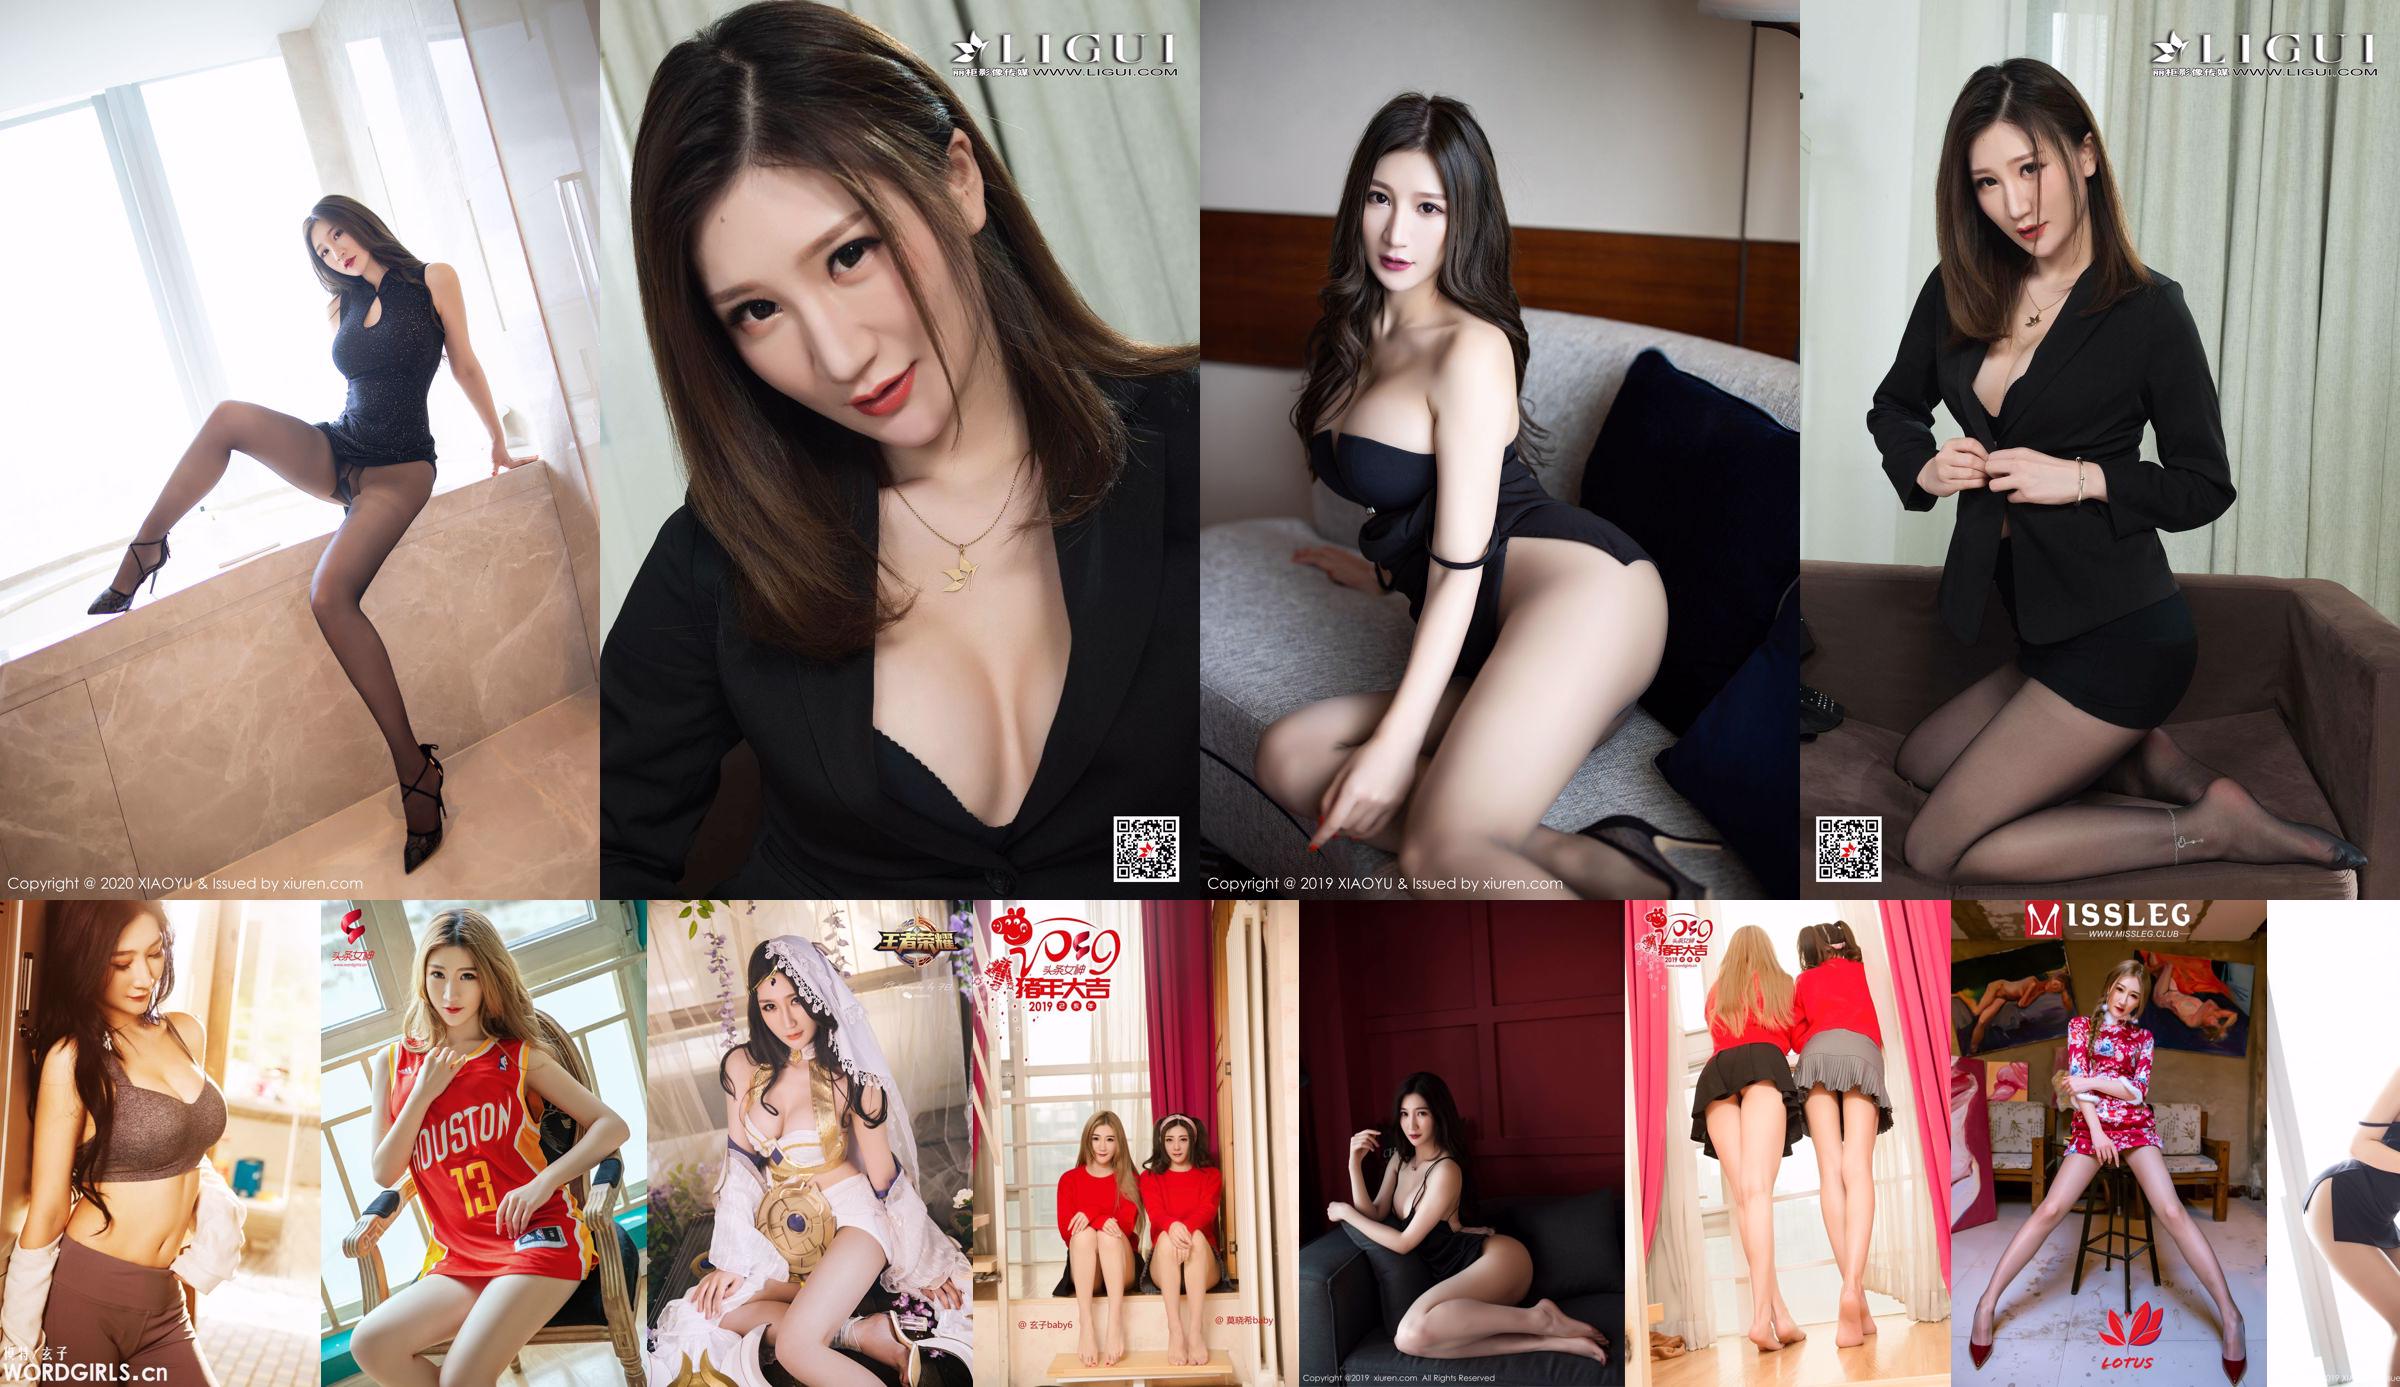 Model Nine Sisters "Neun Schwestern Rotes Dach am chinesischen Valentinstag" [IESS Weird and Interesting] Schöne Beine und Füße No.511eeb Seite 1